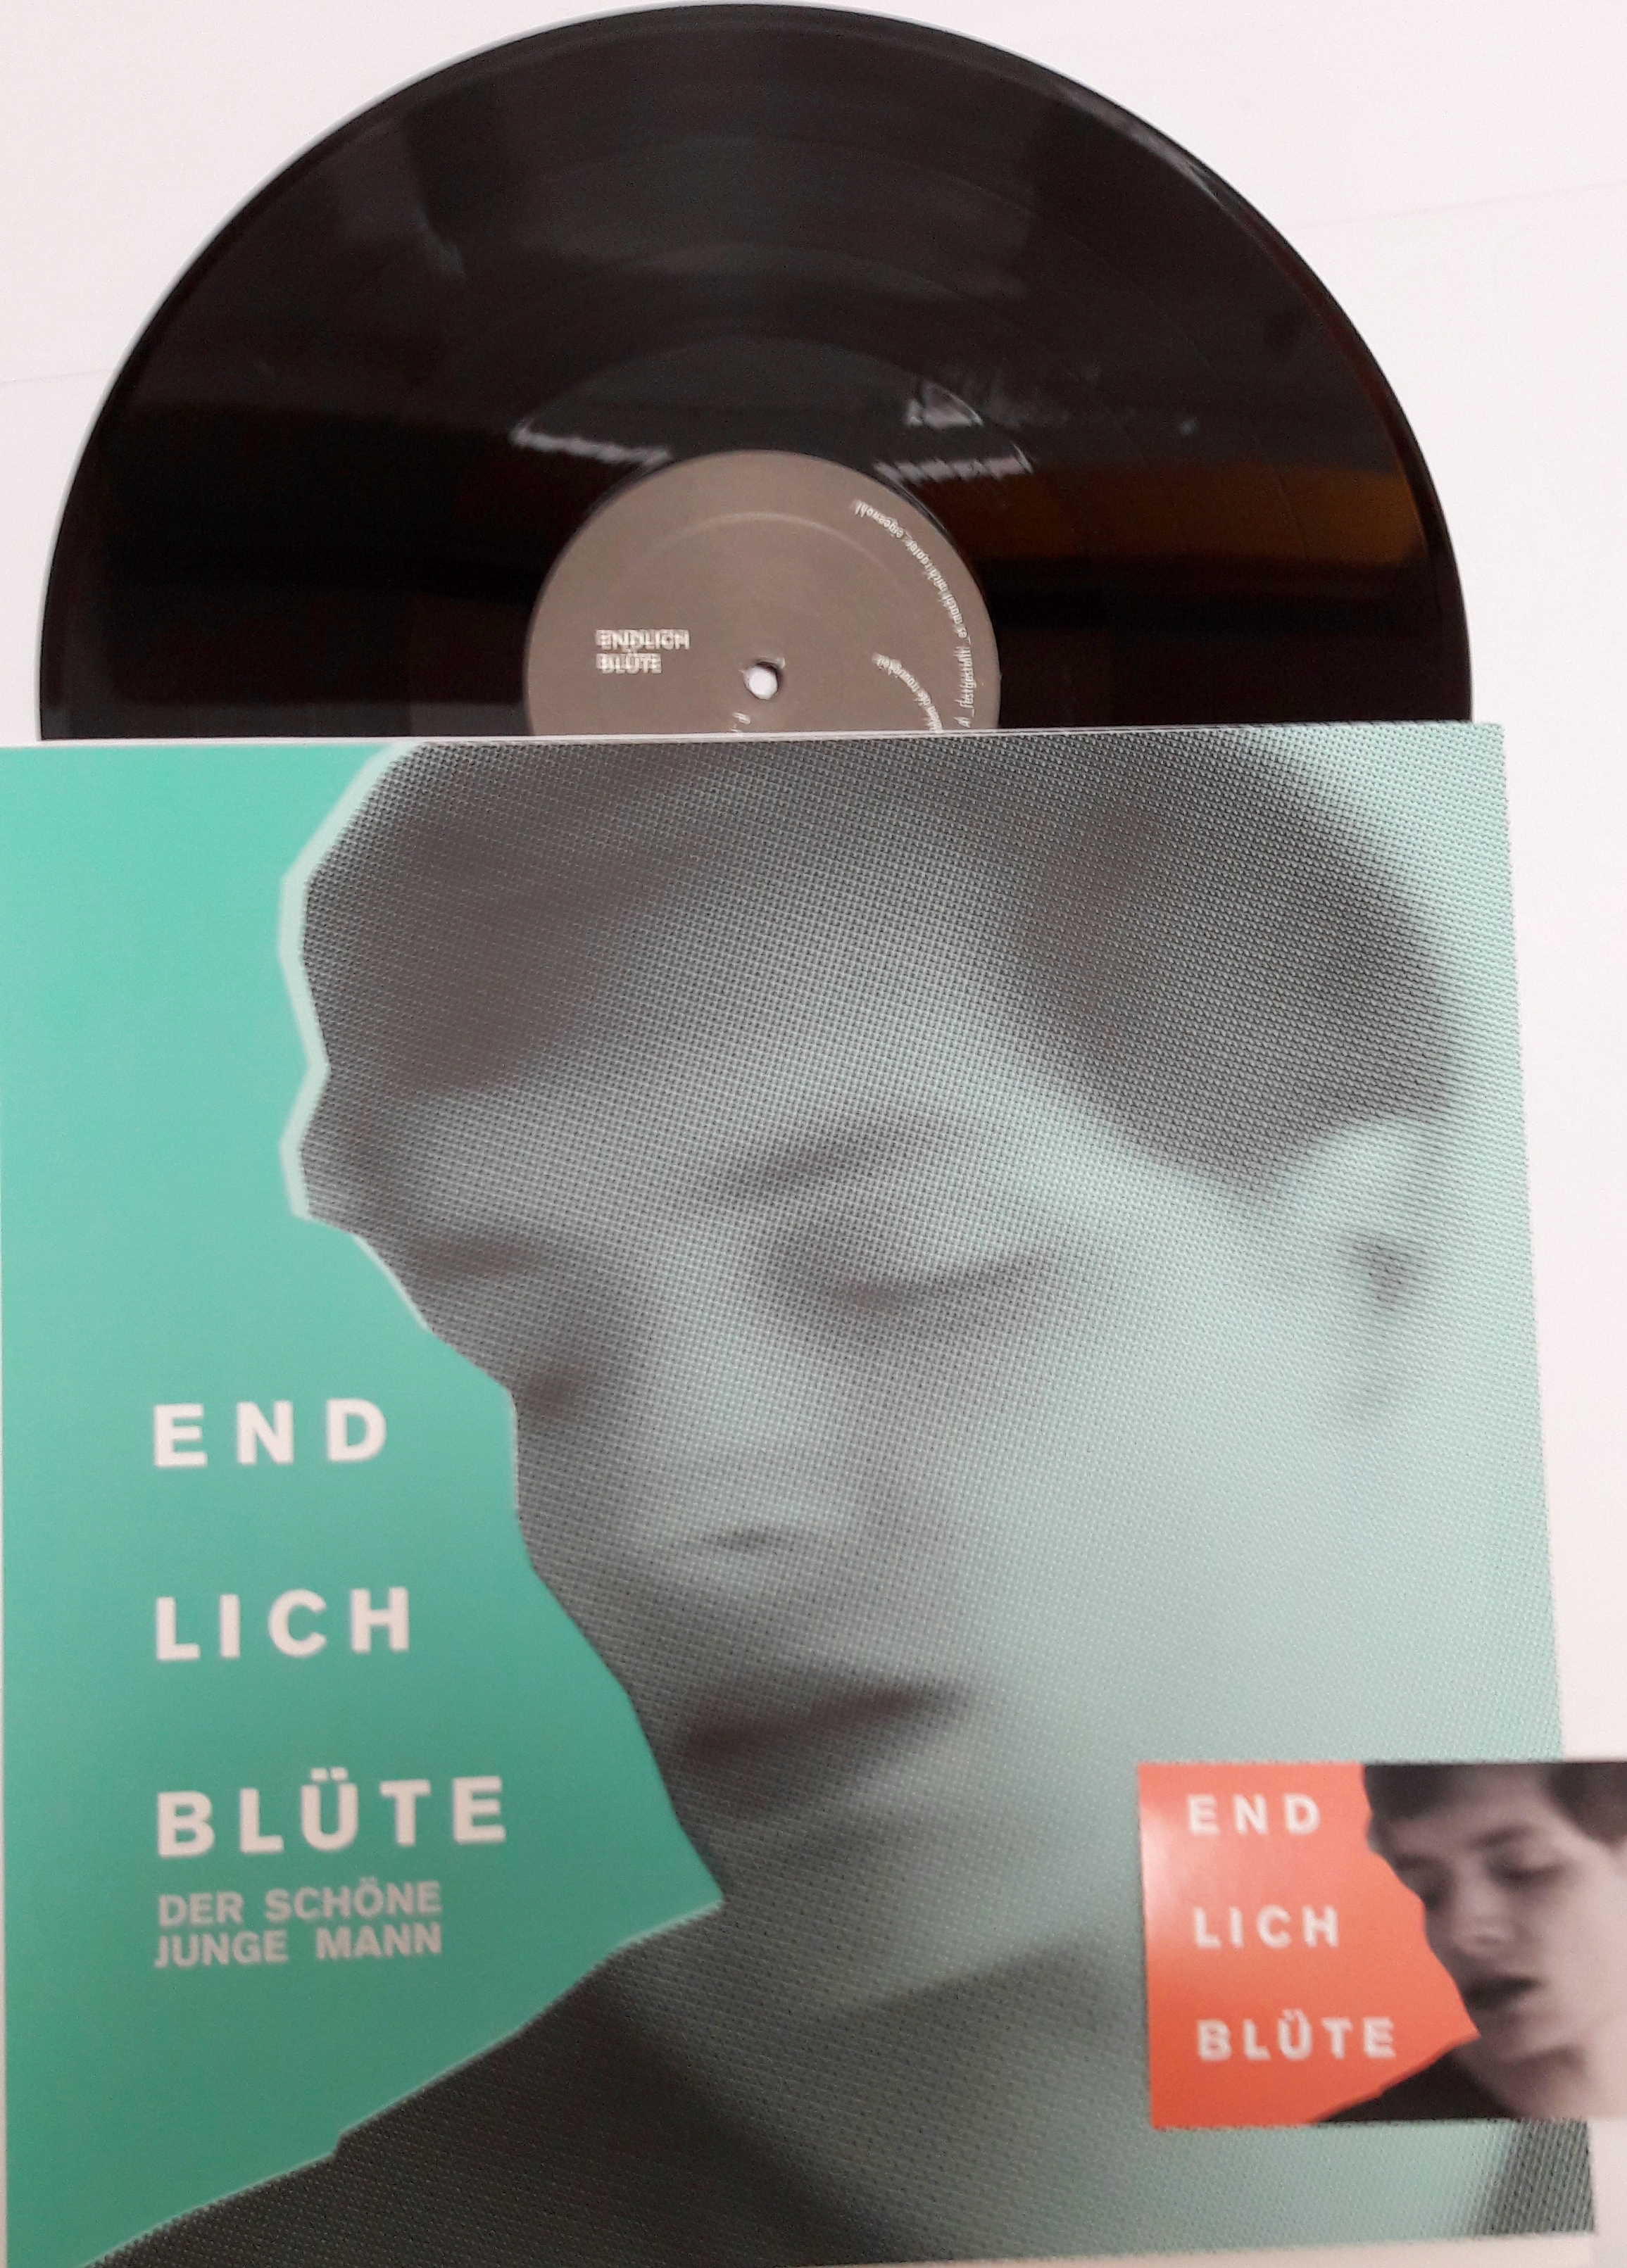 ENDLICH BLÜTE 12 " EP Der Schöne Junge Mann